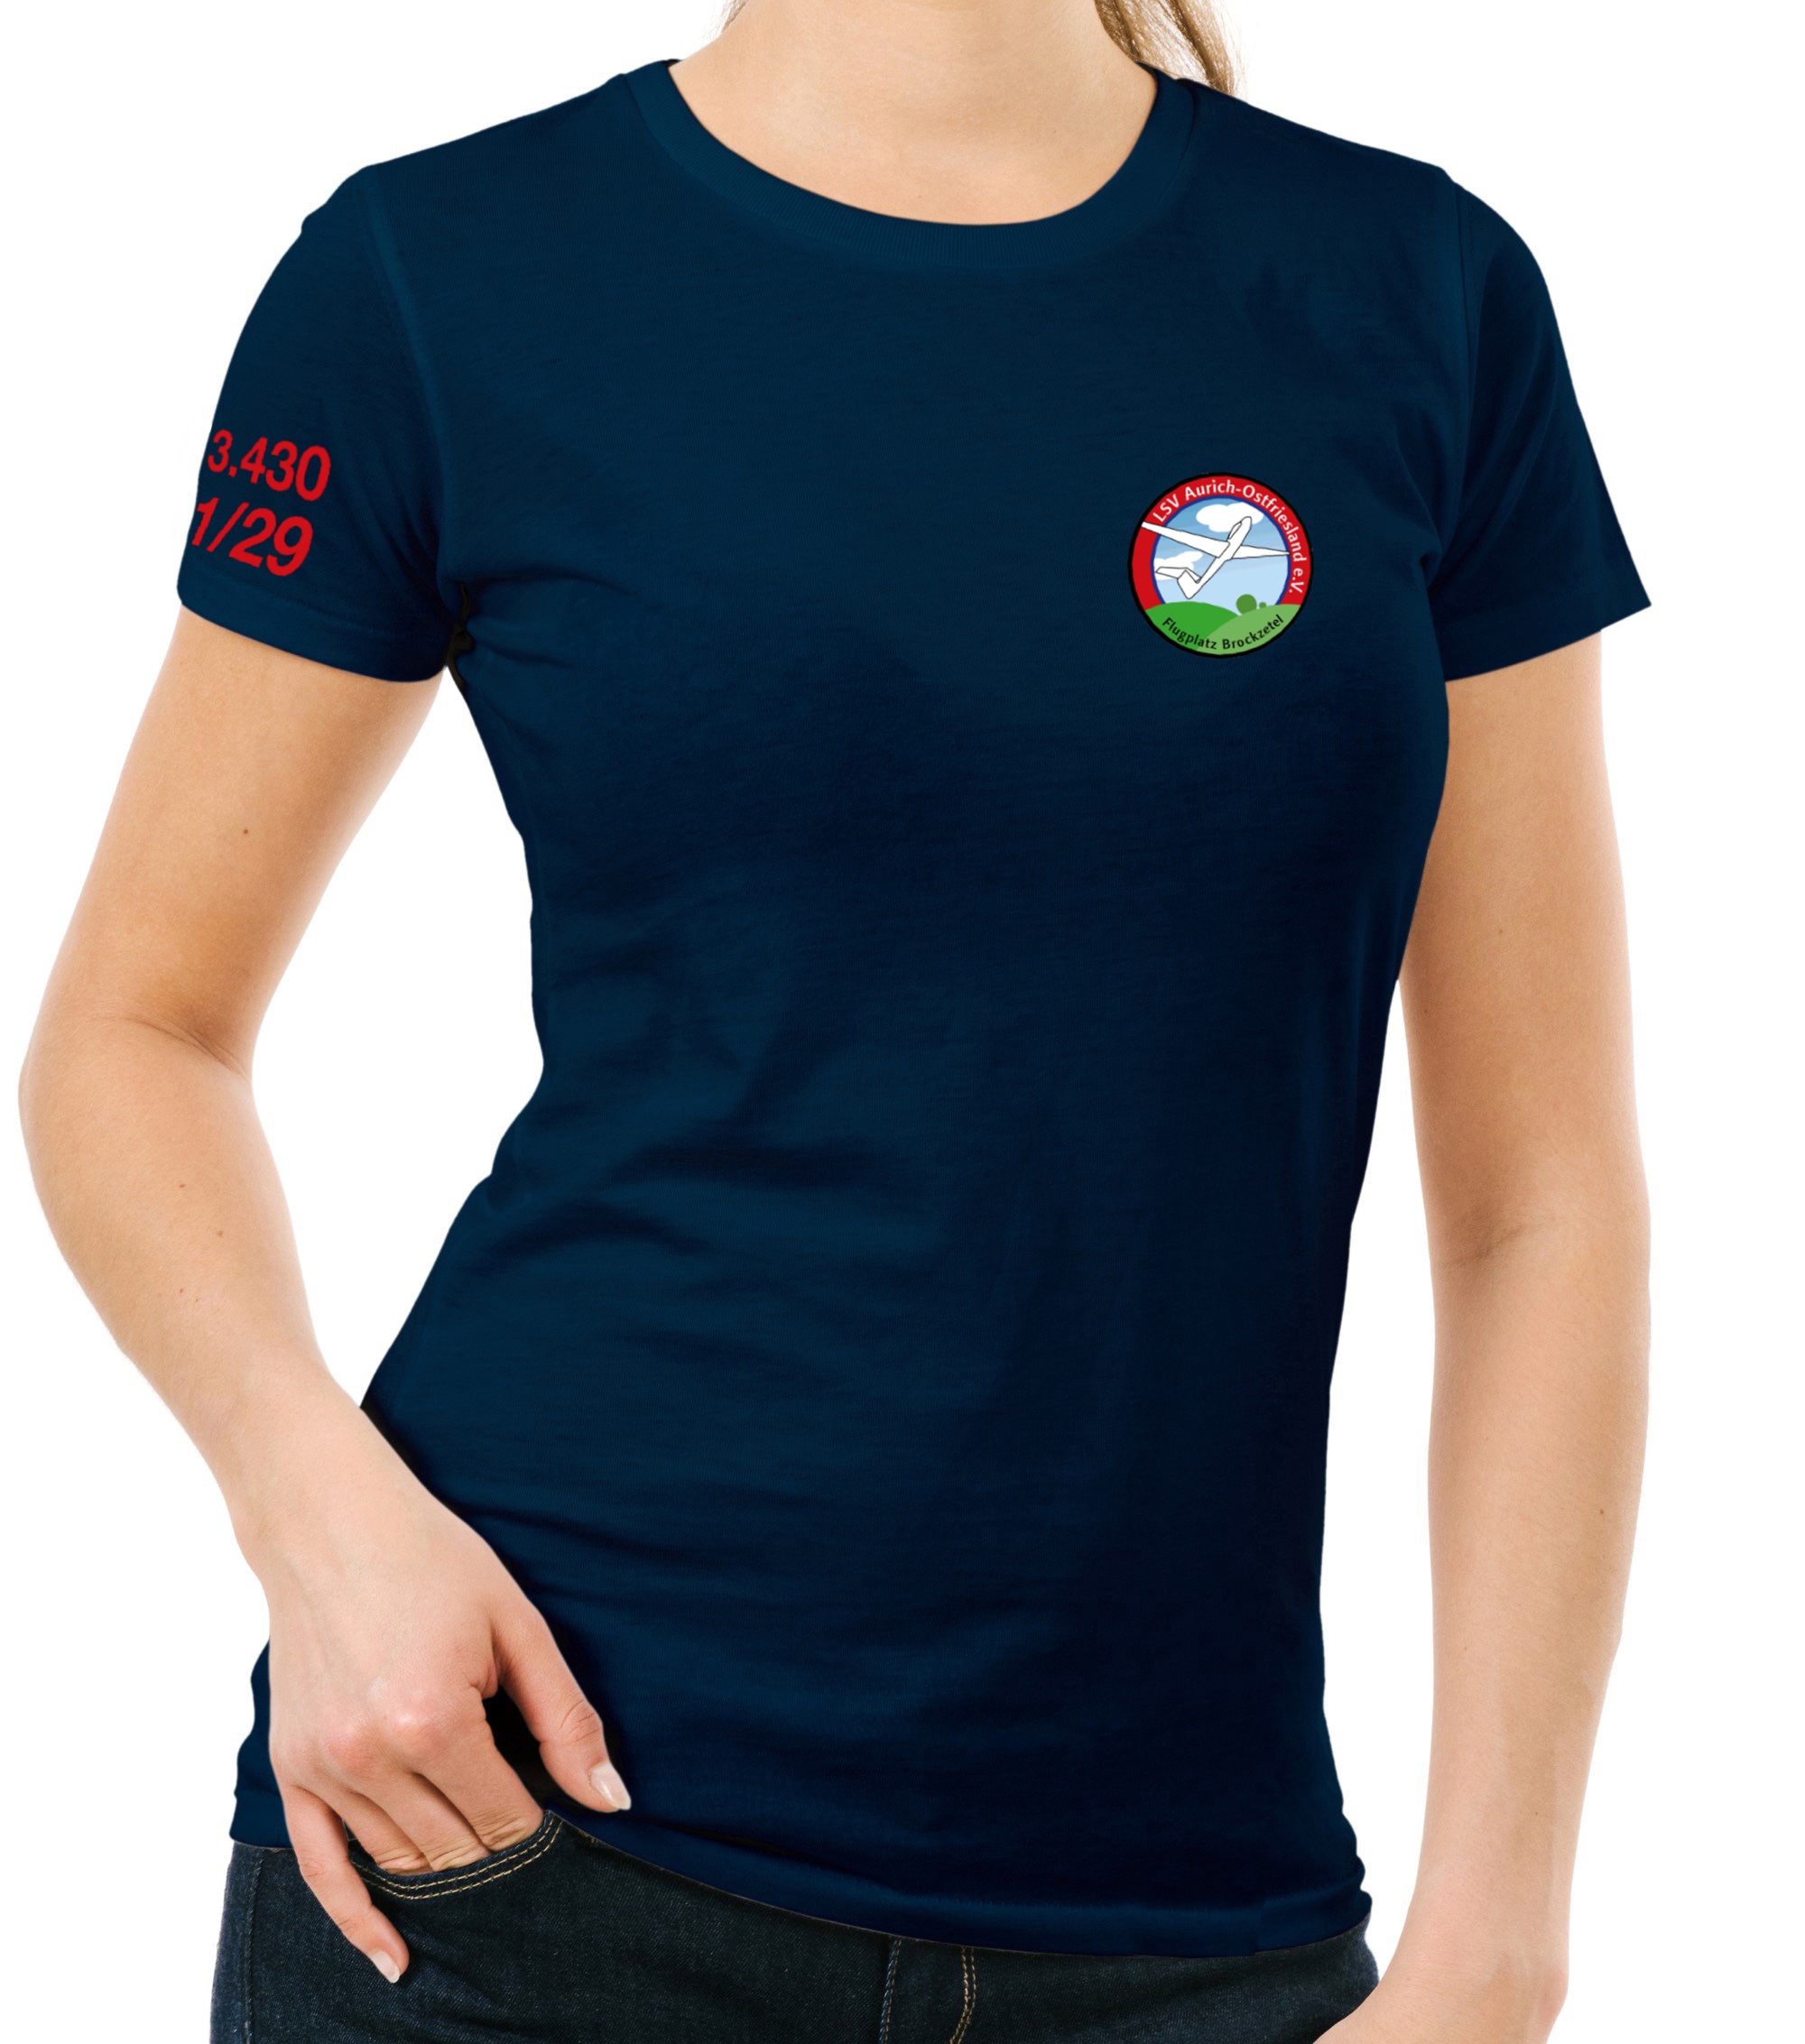 Damen T-Shirt LSV Aurich-Ostfriesland e.V.